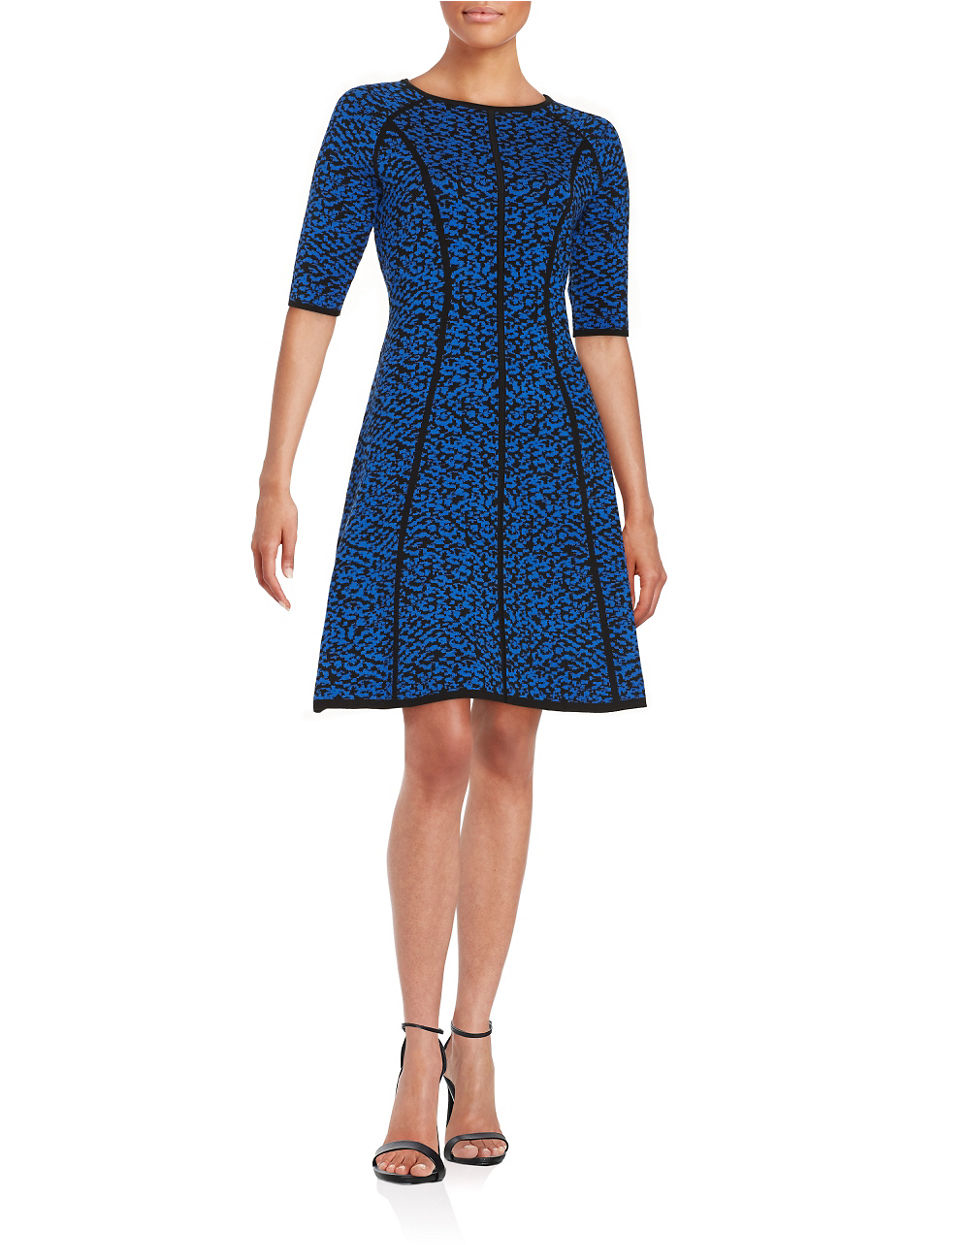 Karl lagerfeld Patterned A-line Sweater Dress in Blue | Lyst